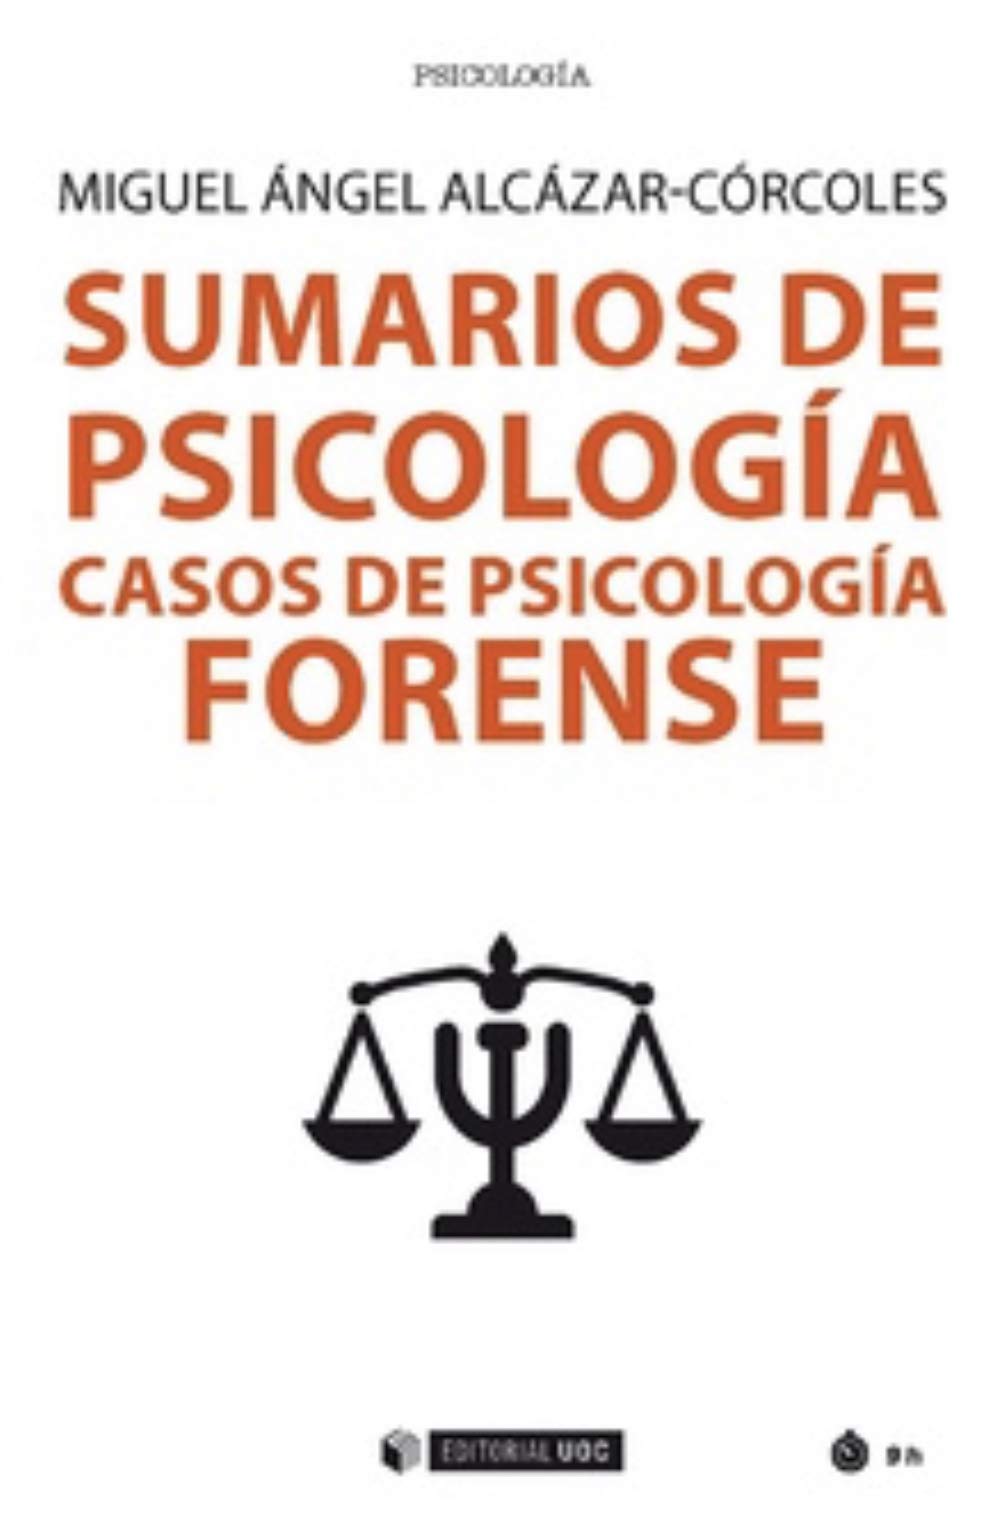 Imagen de portada del libro Sumarios de psicología